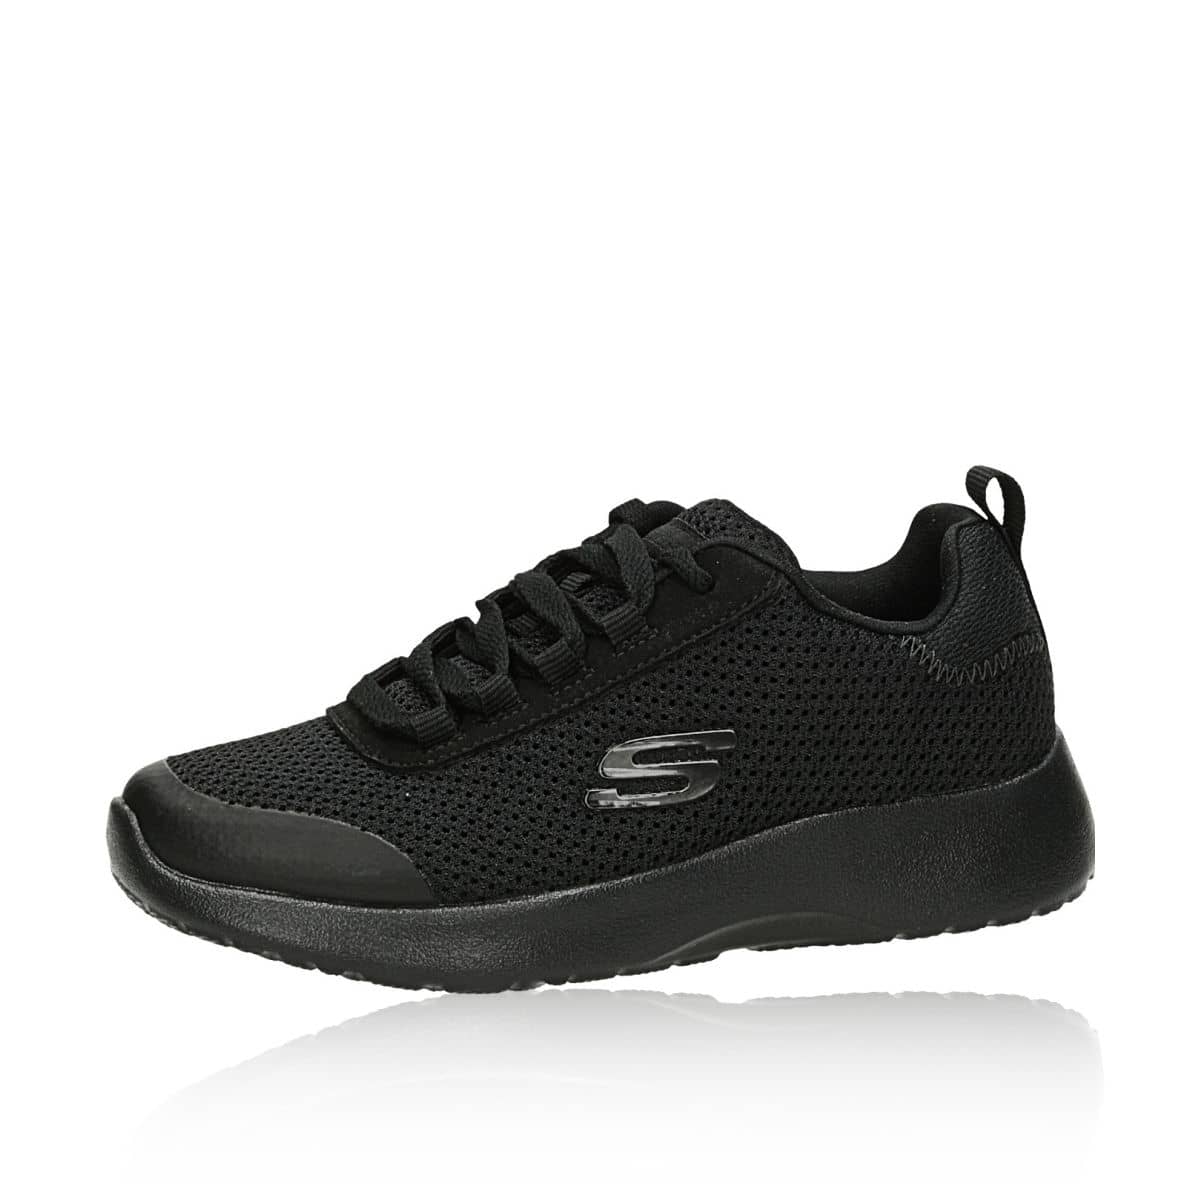 Skechers sneakers - black | Robel.shoes